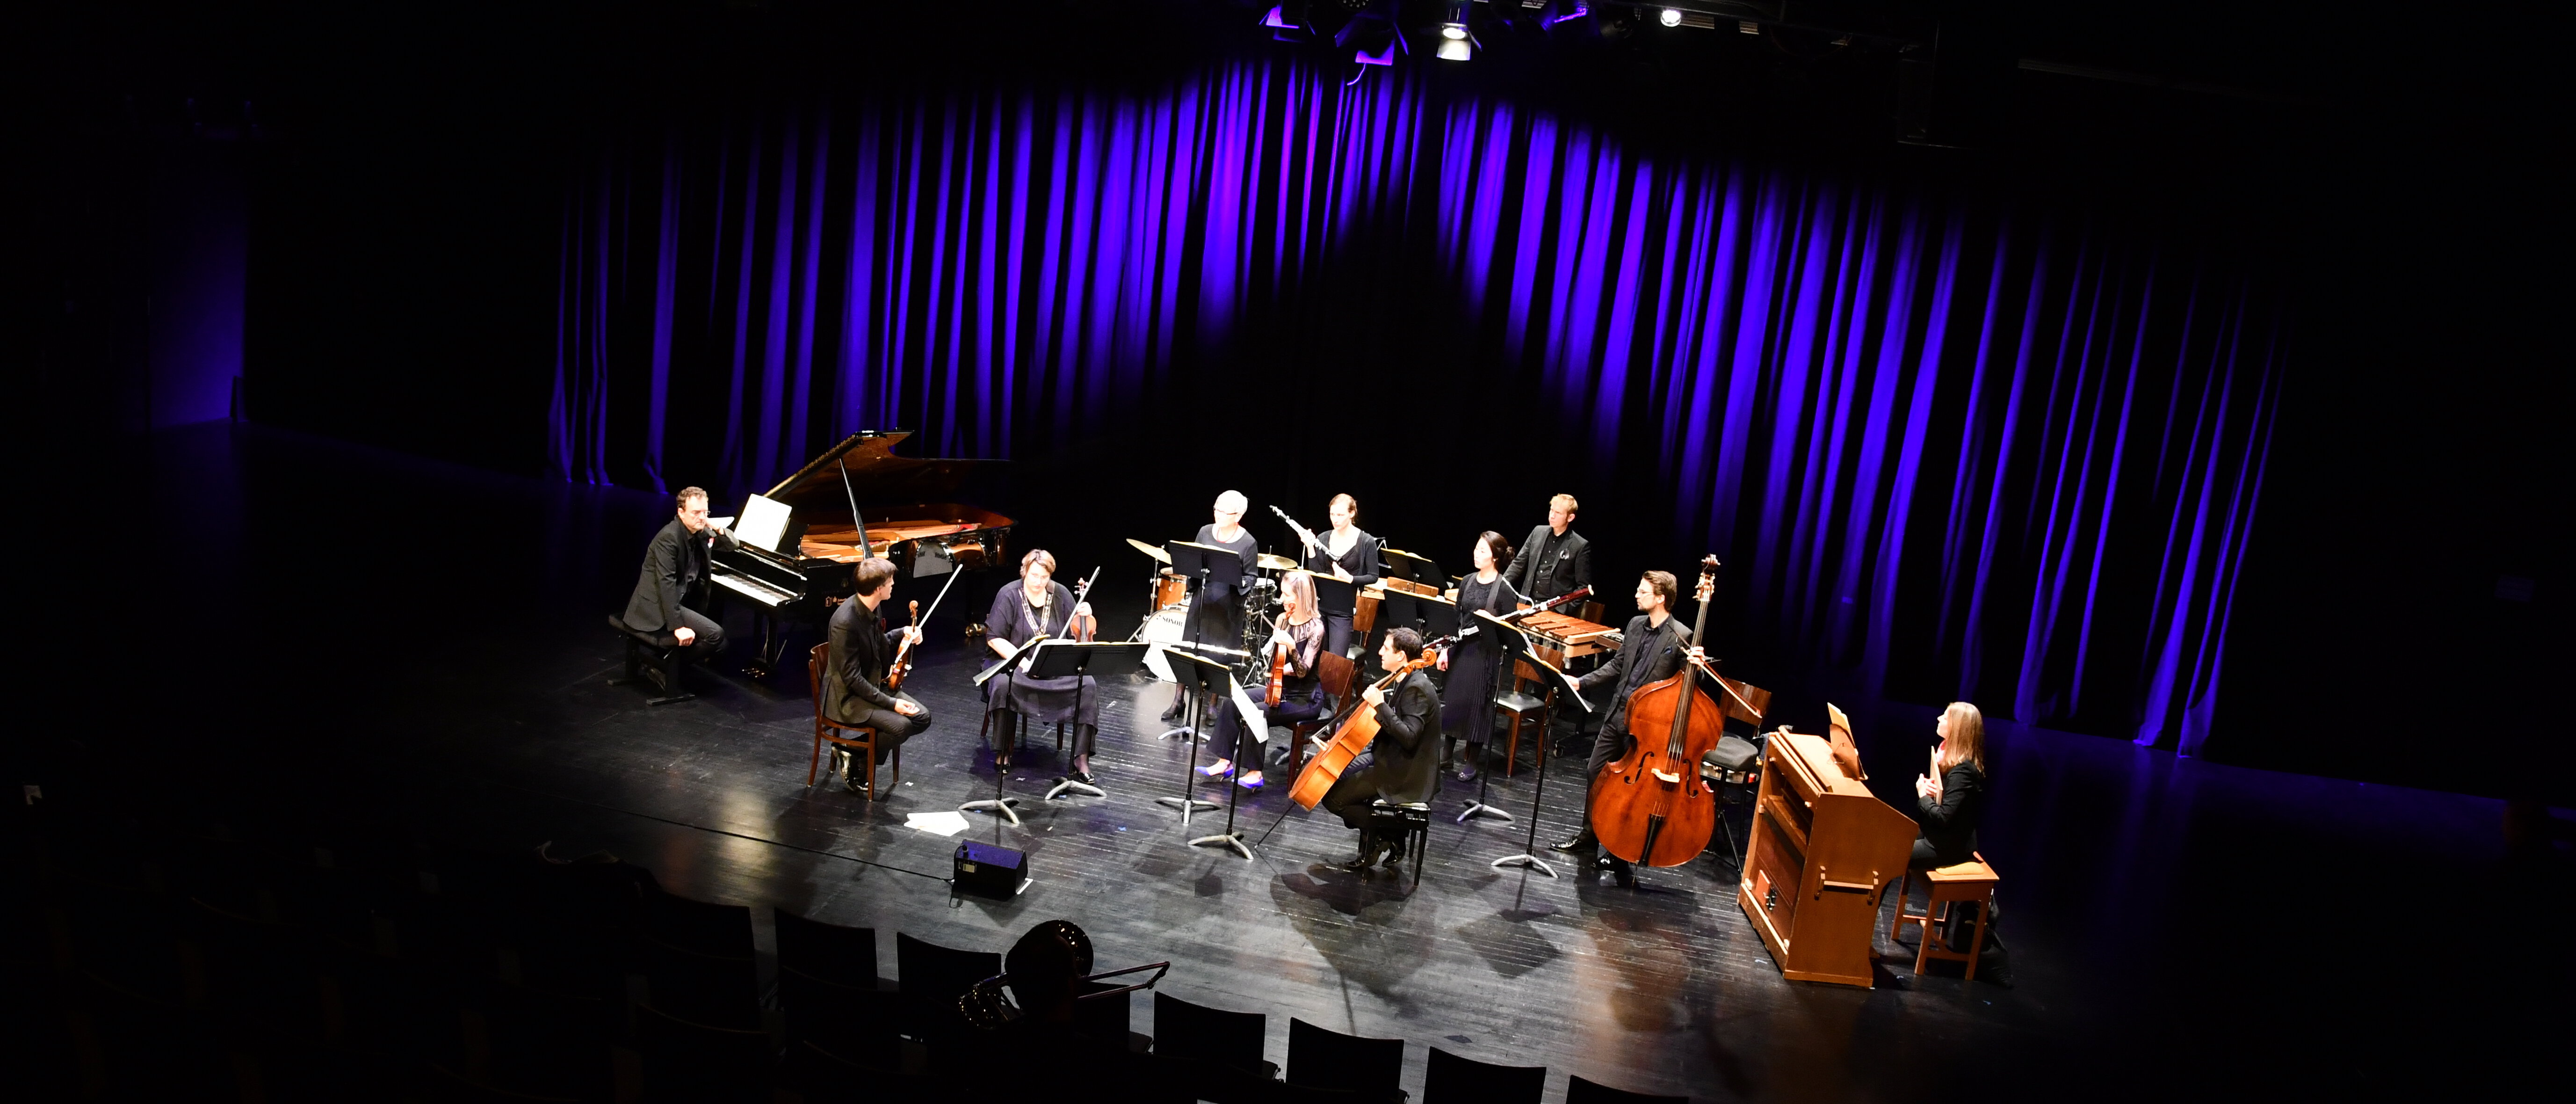 Das Orchester von ensembleKontraste auf der Bühne der Tafelhalle.